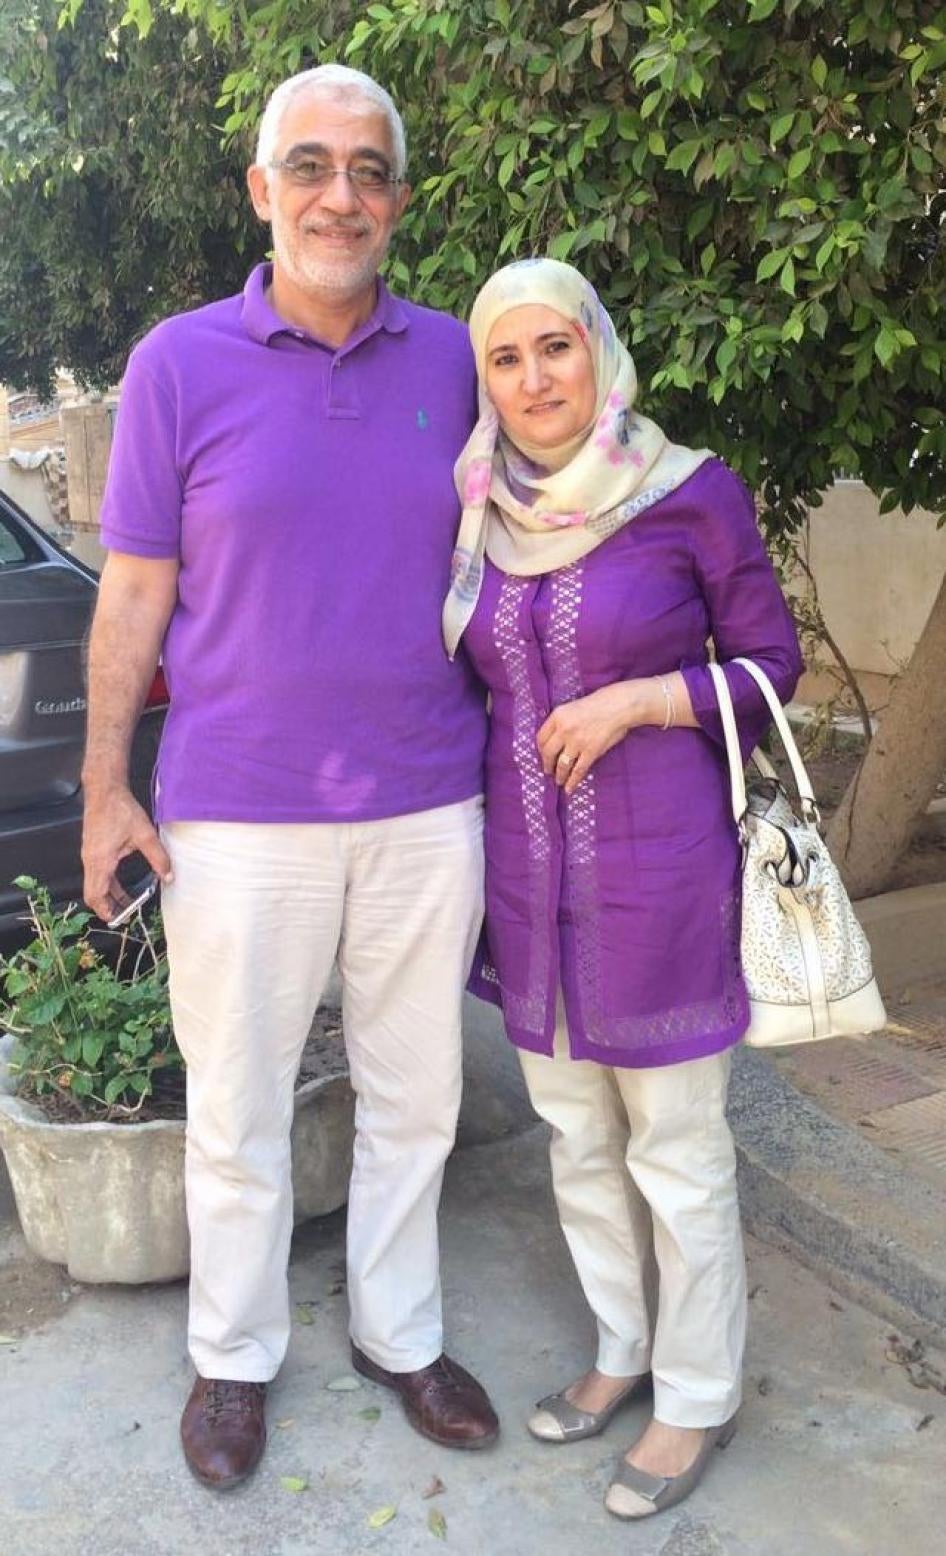 أوقفت قوات الأمن التابعة لوزارة الداخلية علا القرضاوي (55 عاما) وزوجها حسام خلف (58 عاما) من دون مذكرة توقيف على خلفية مزاعم ارتباطهما بـ" الإخوان المسلمين".  